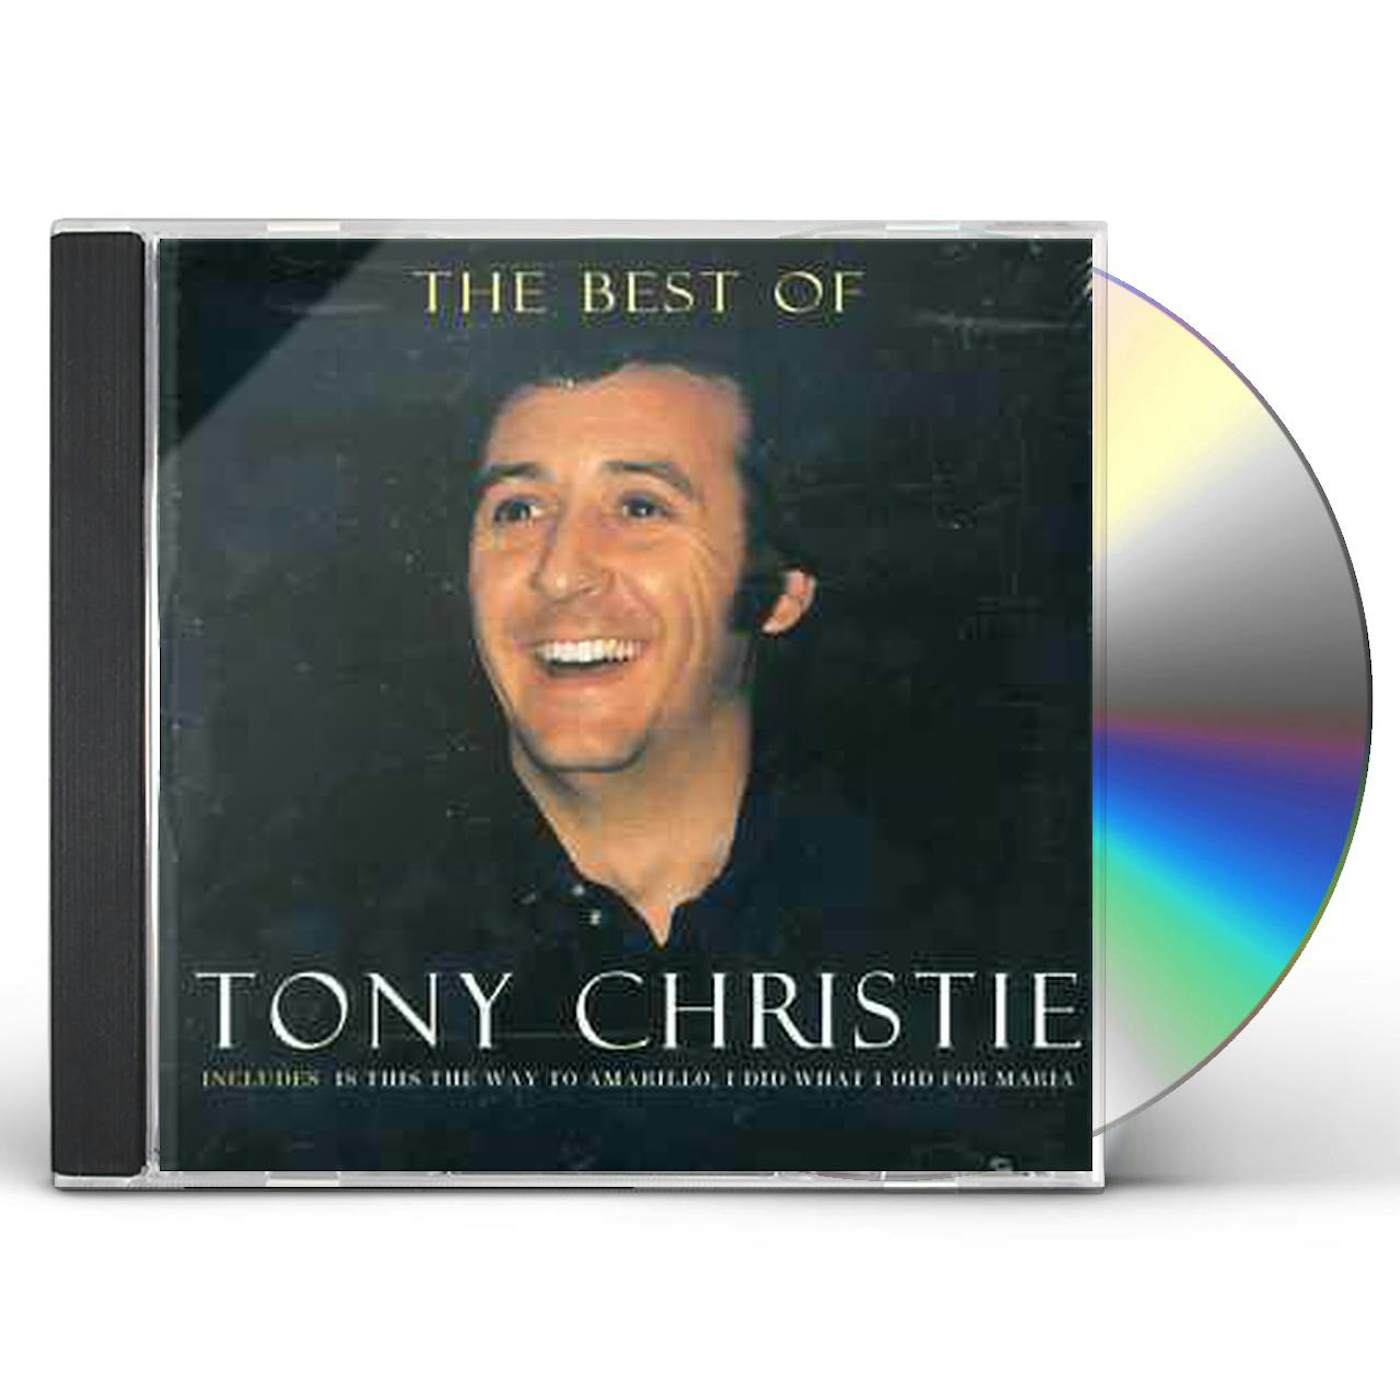 Tony Christie BEST OF CD